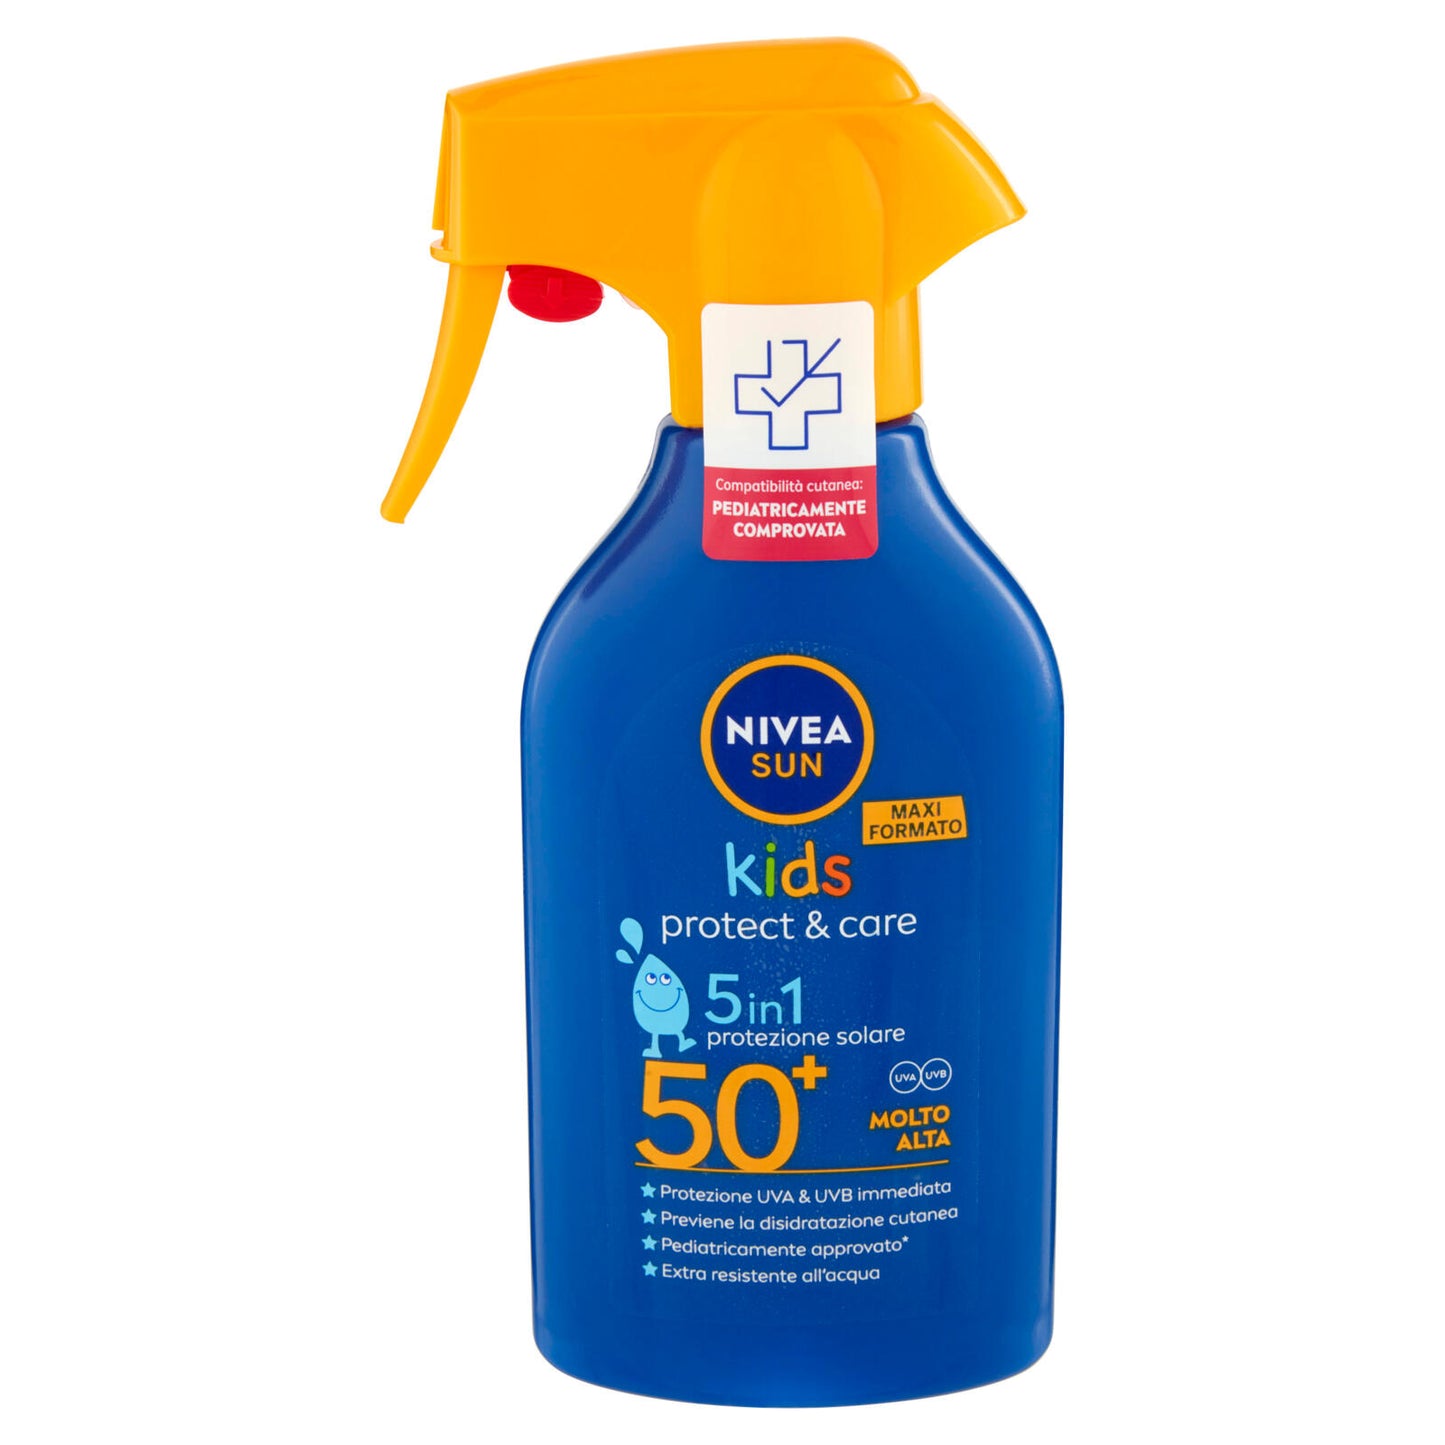 Nivea Sun kids protect & care 50+ Molto Alta 270 ml